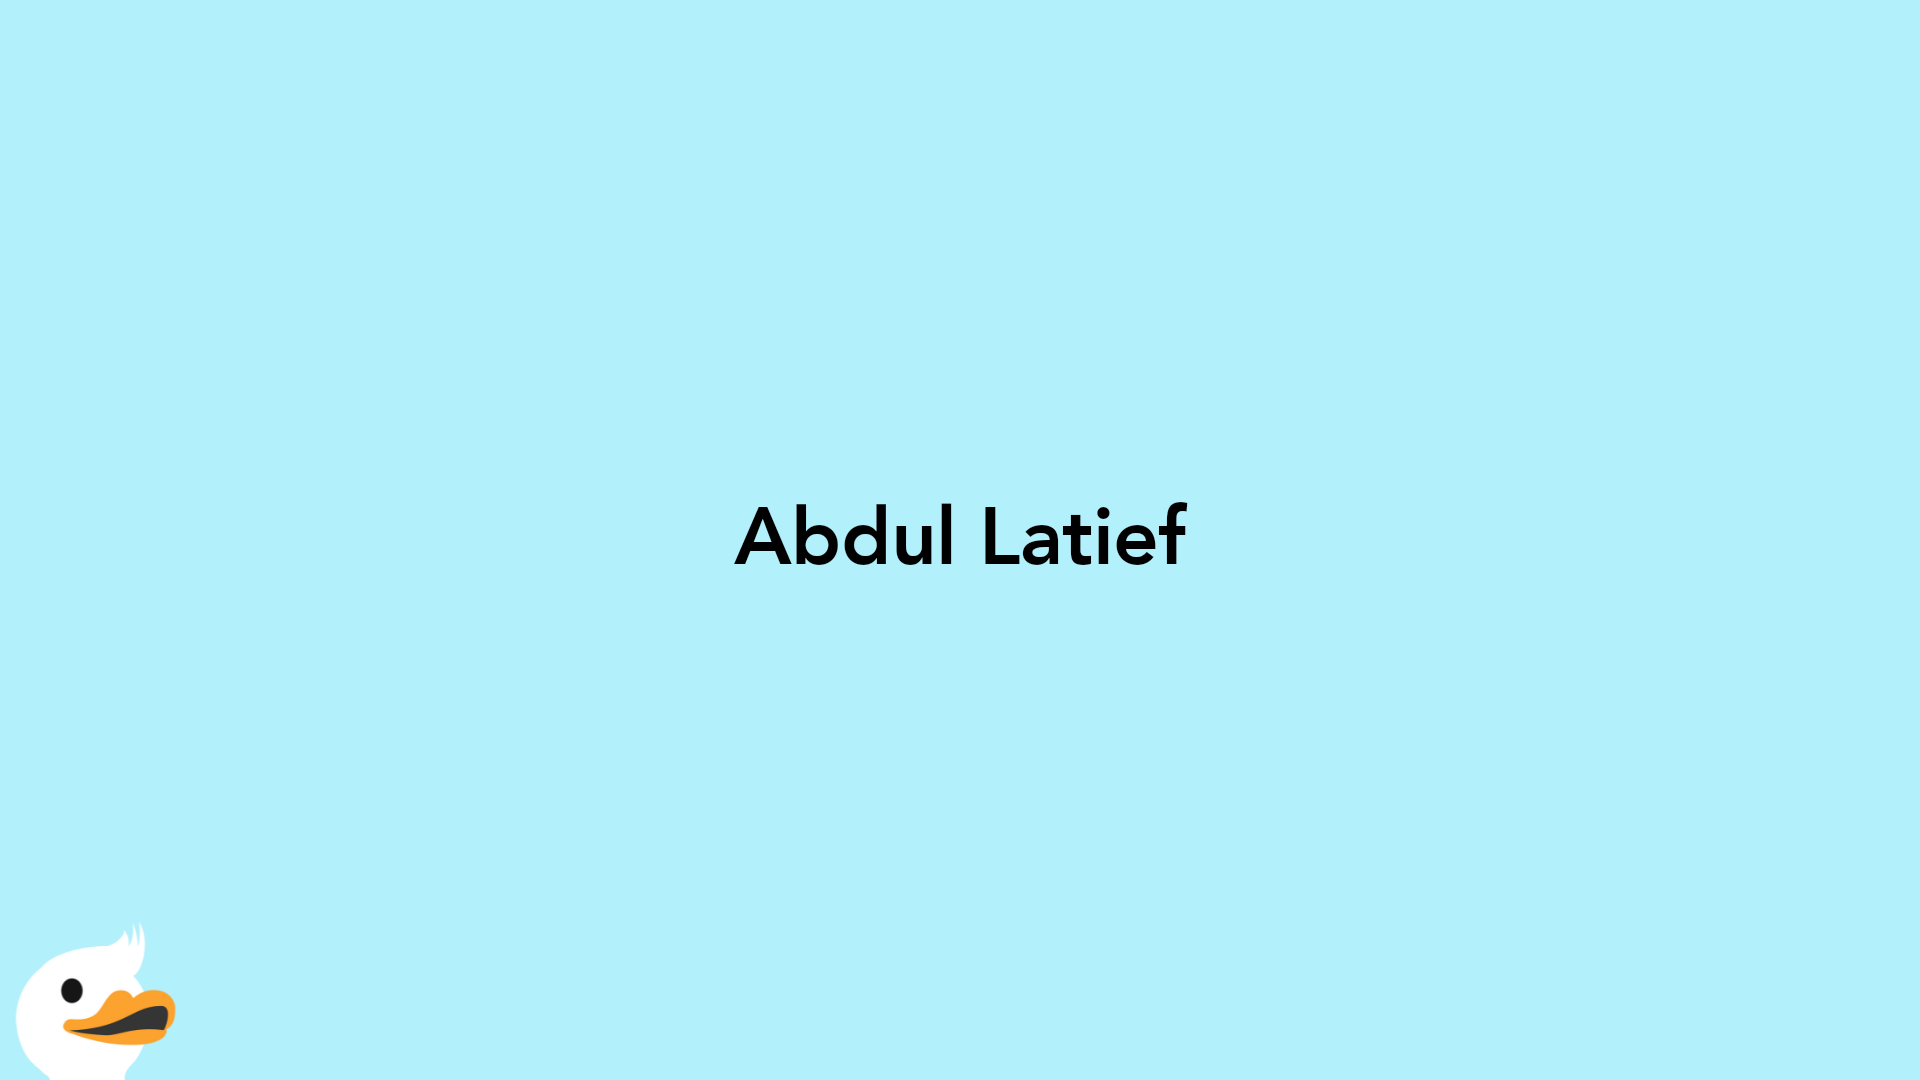 Abdul Latief